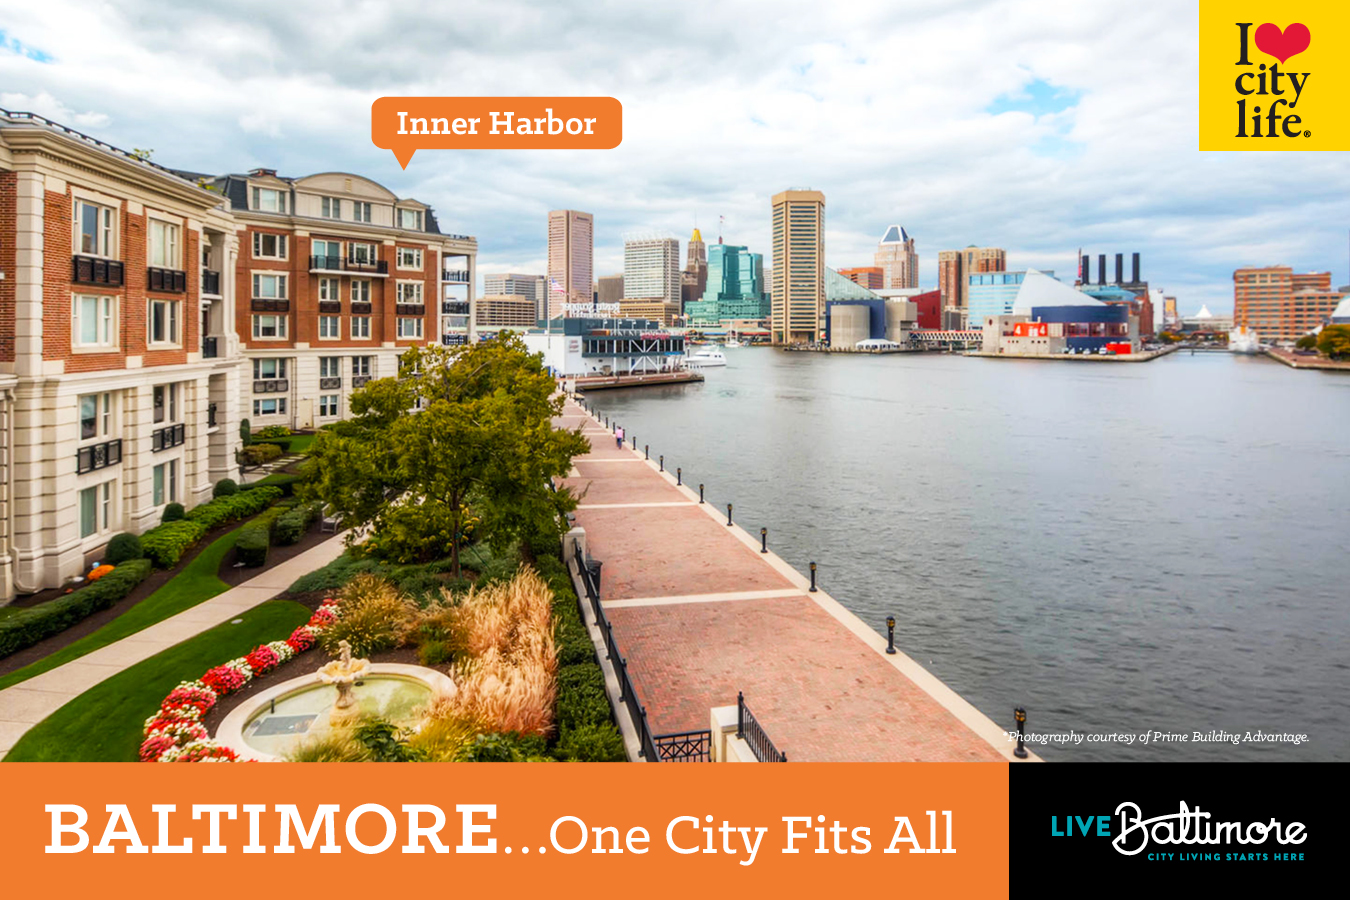 Live Baltimore